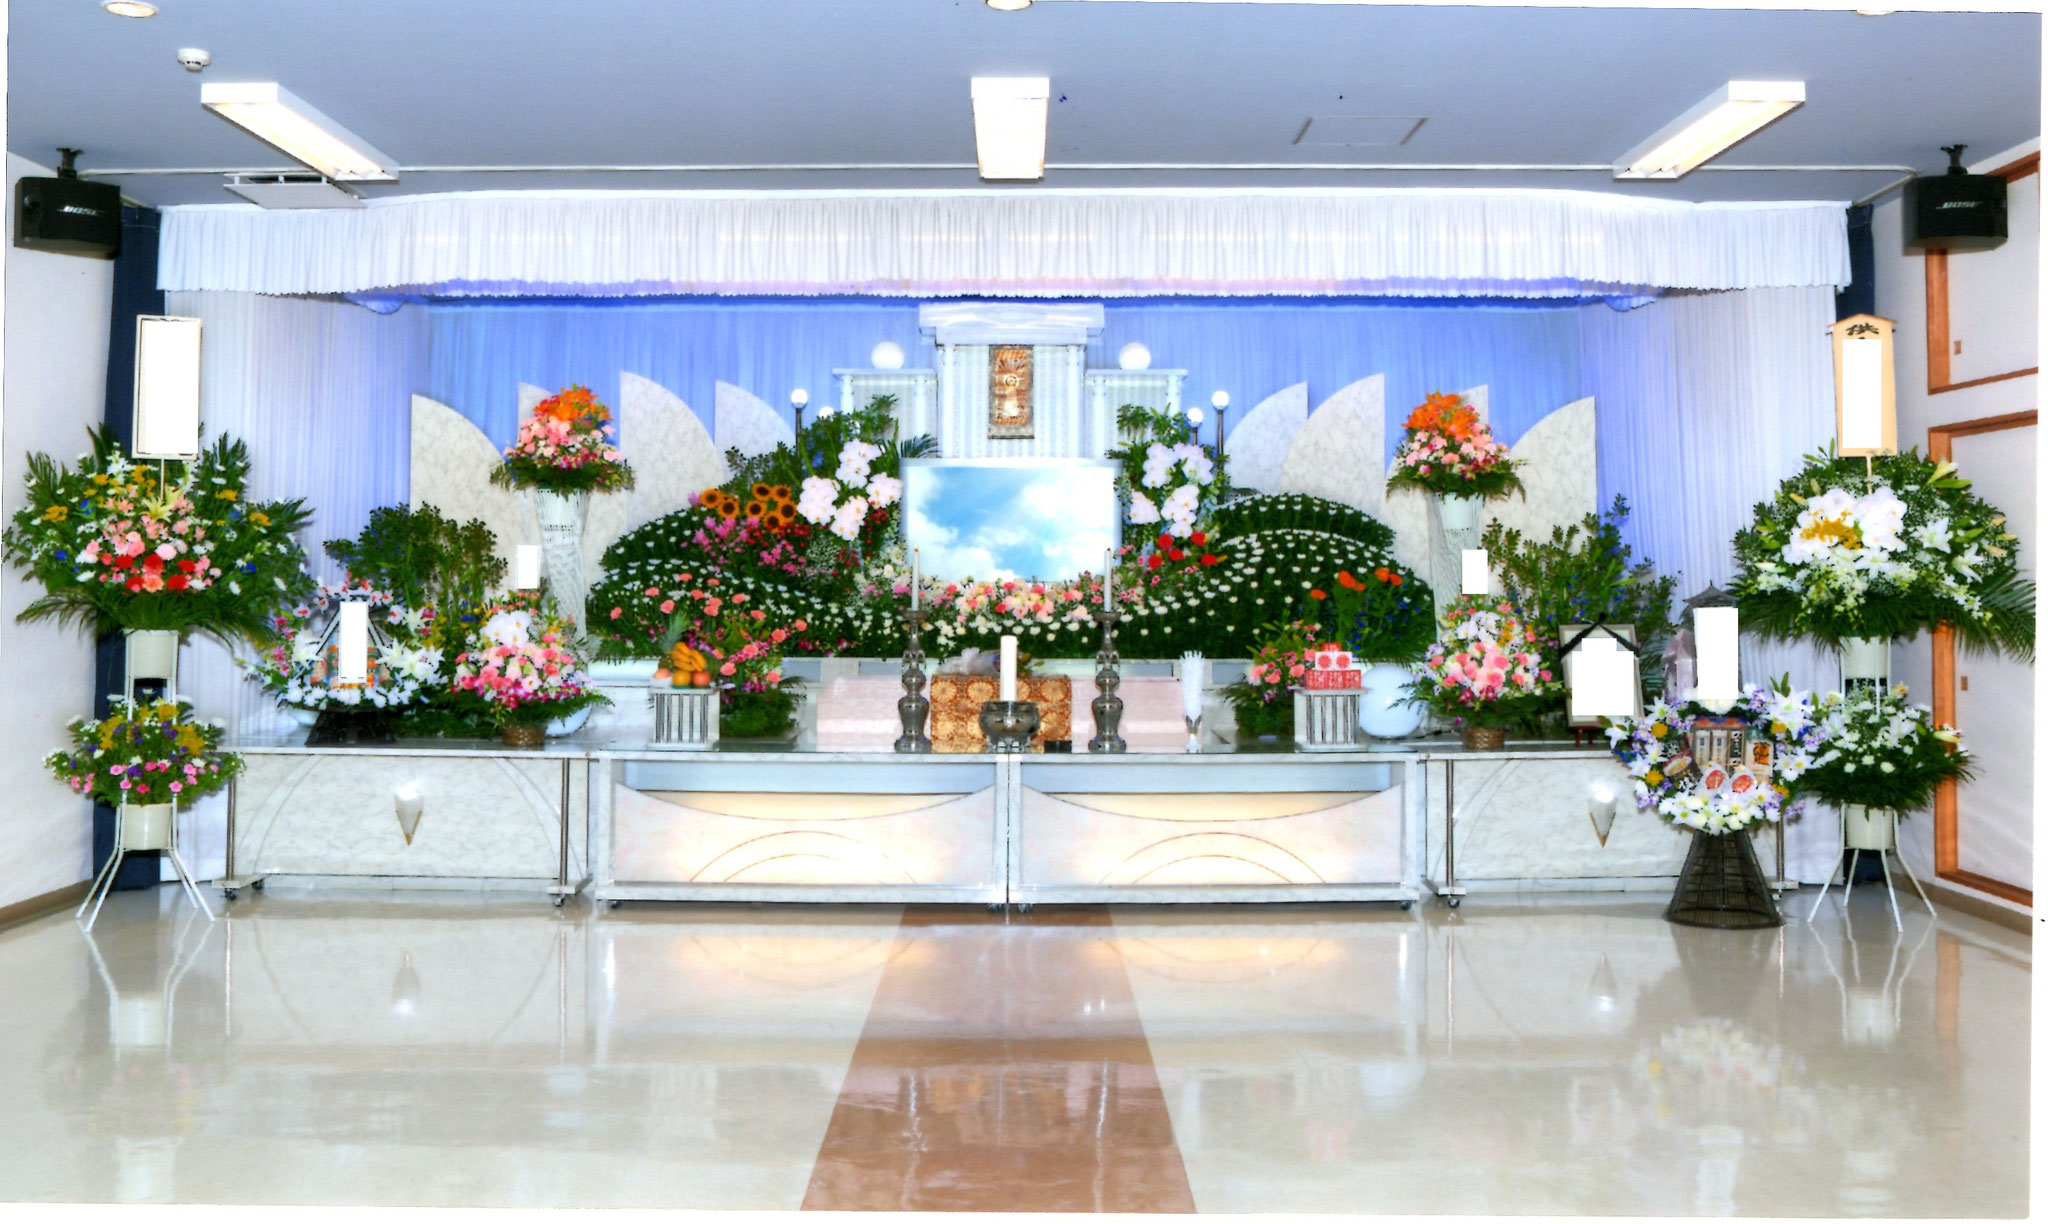 札幌市での家族葬・葬儀ならメモリーズてんそうへ。齋場プランの一例です。